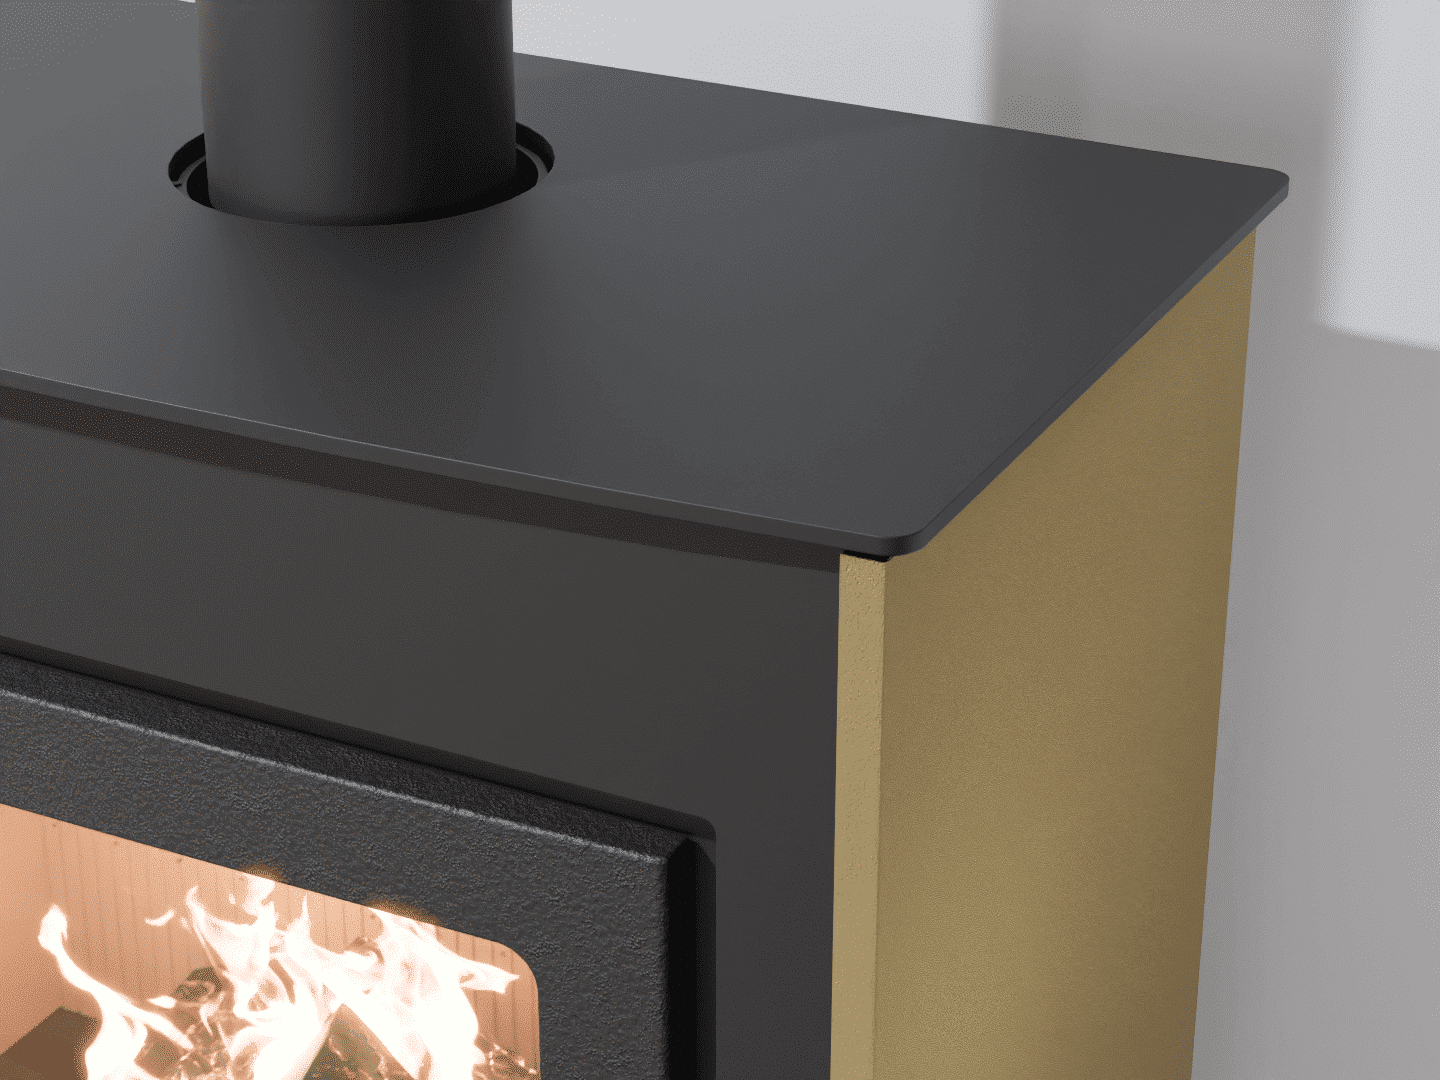 2103_Fireplace stove with heat exchanger_Khaki Grey_KamnaSchejbal_Kamna Schejbal_Kamnazvyroby_detail pravý bok